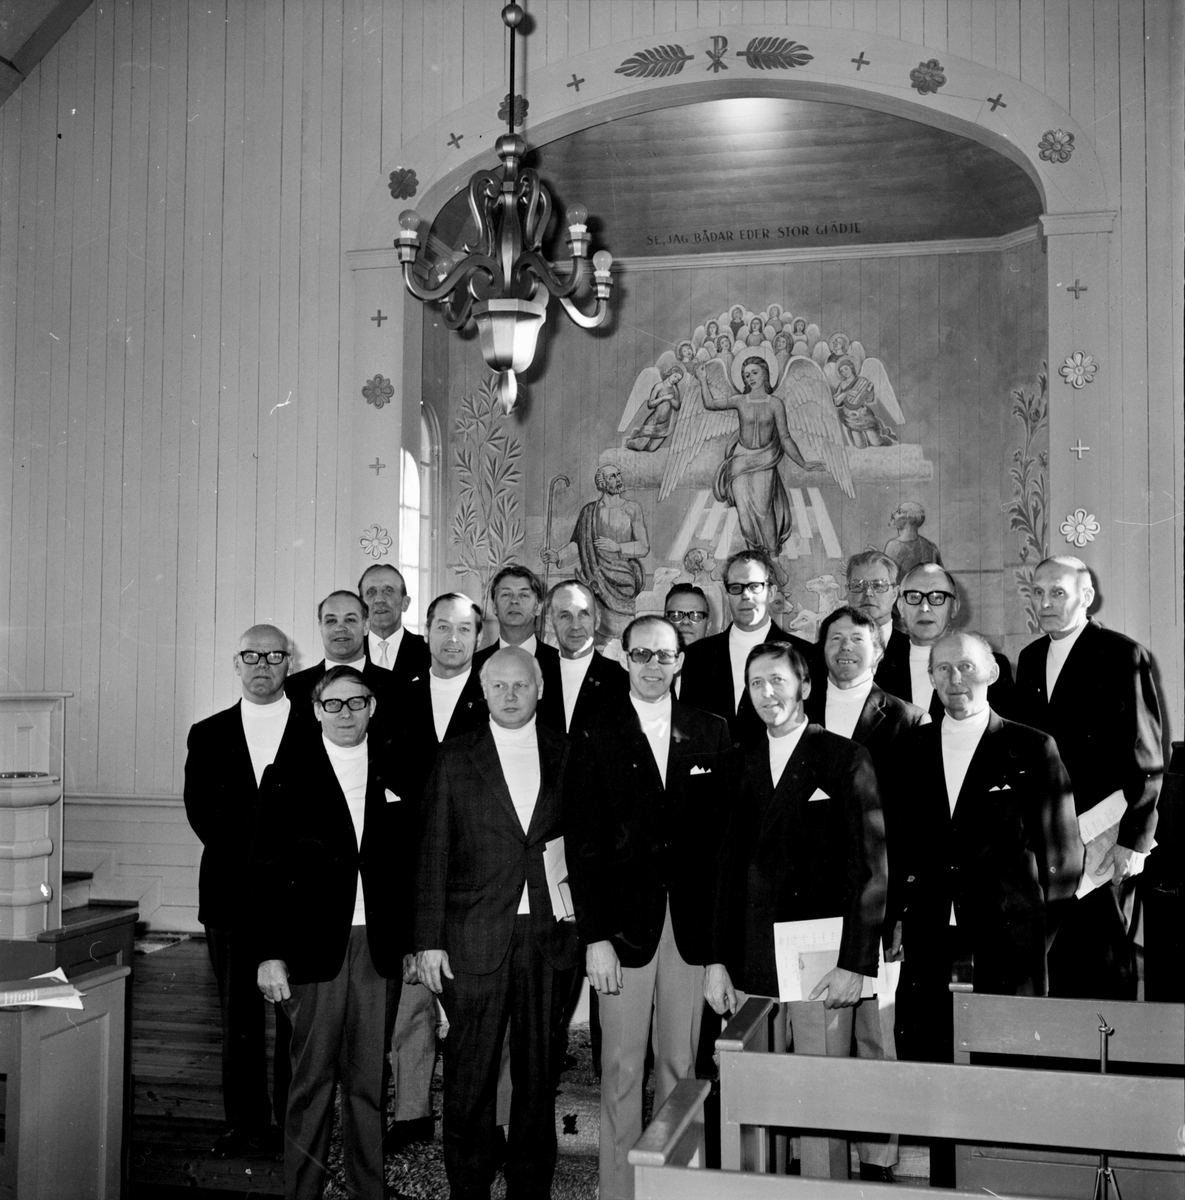 Bollnäs manskör i Växbo kapell,
17 dec 1972